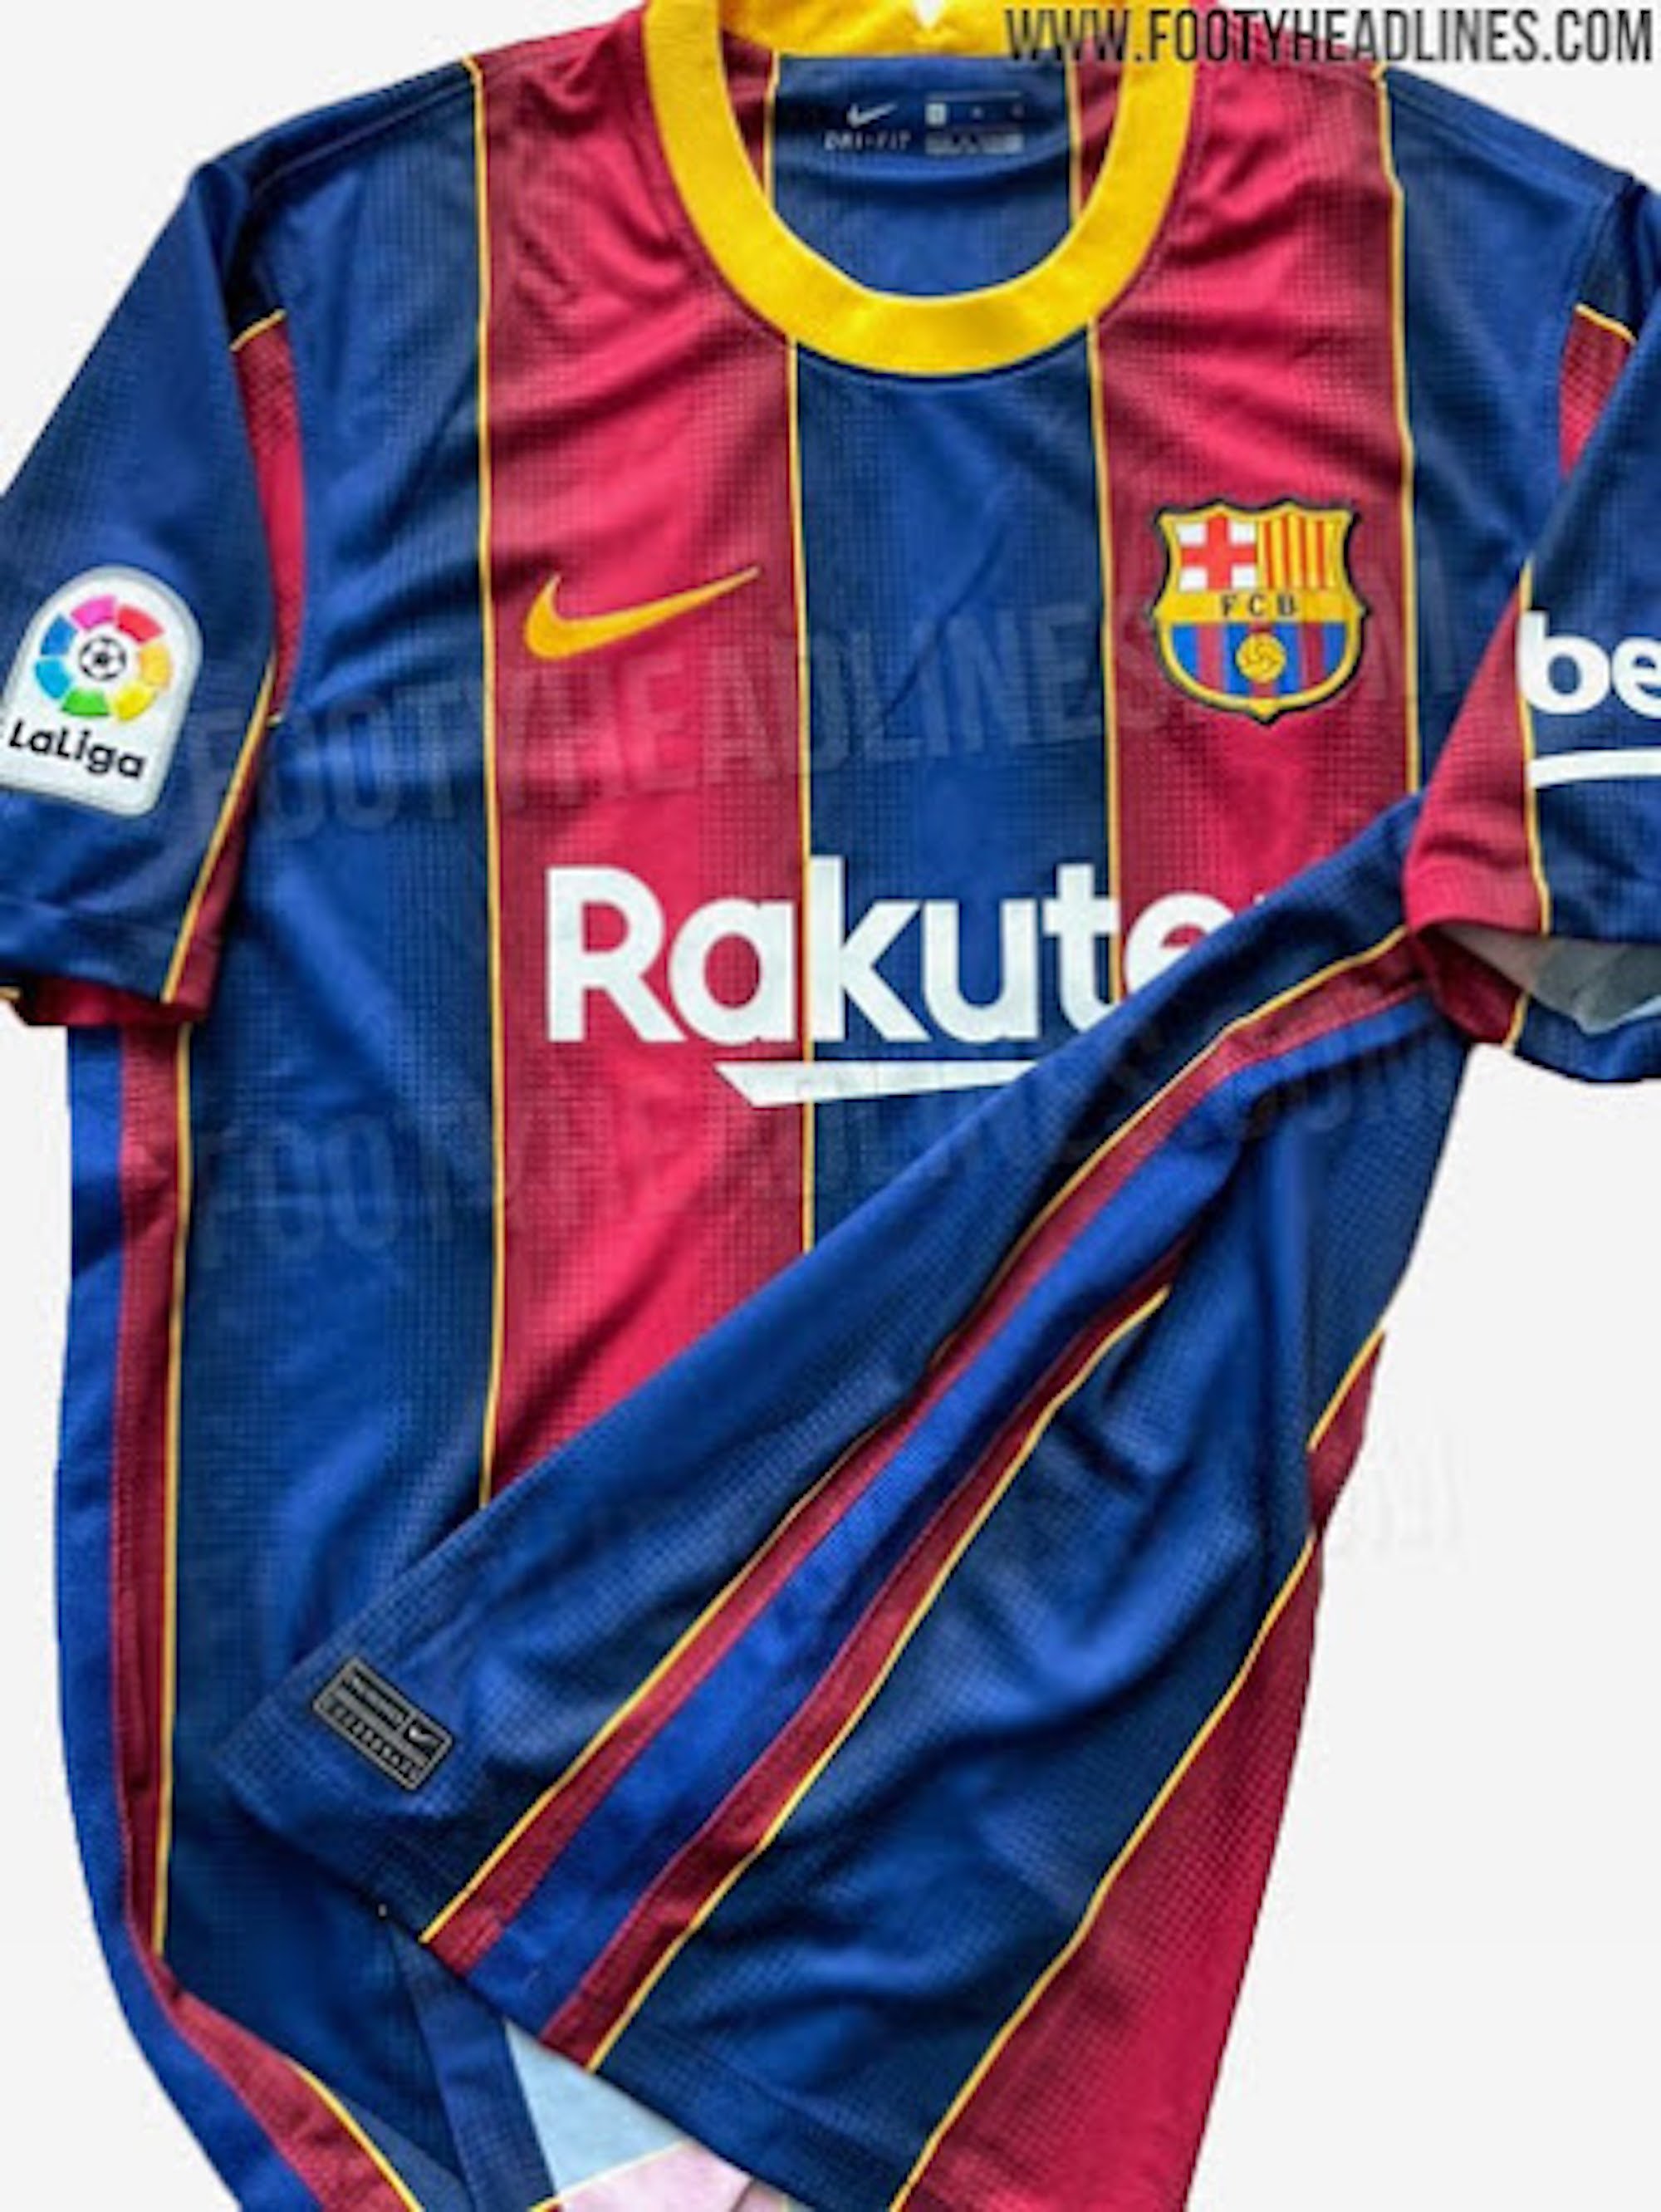 Nike retira la nueva equipación del Barça porque destiñe